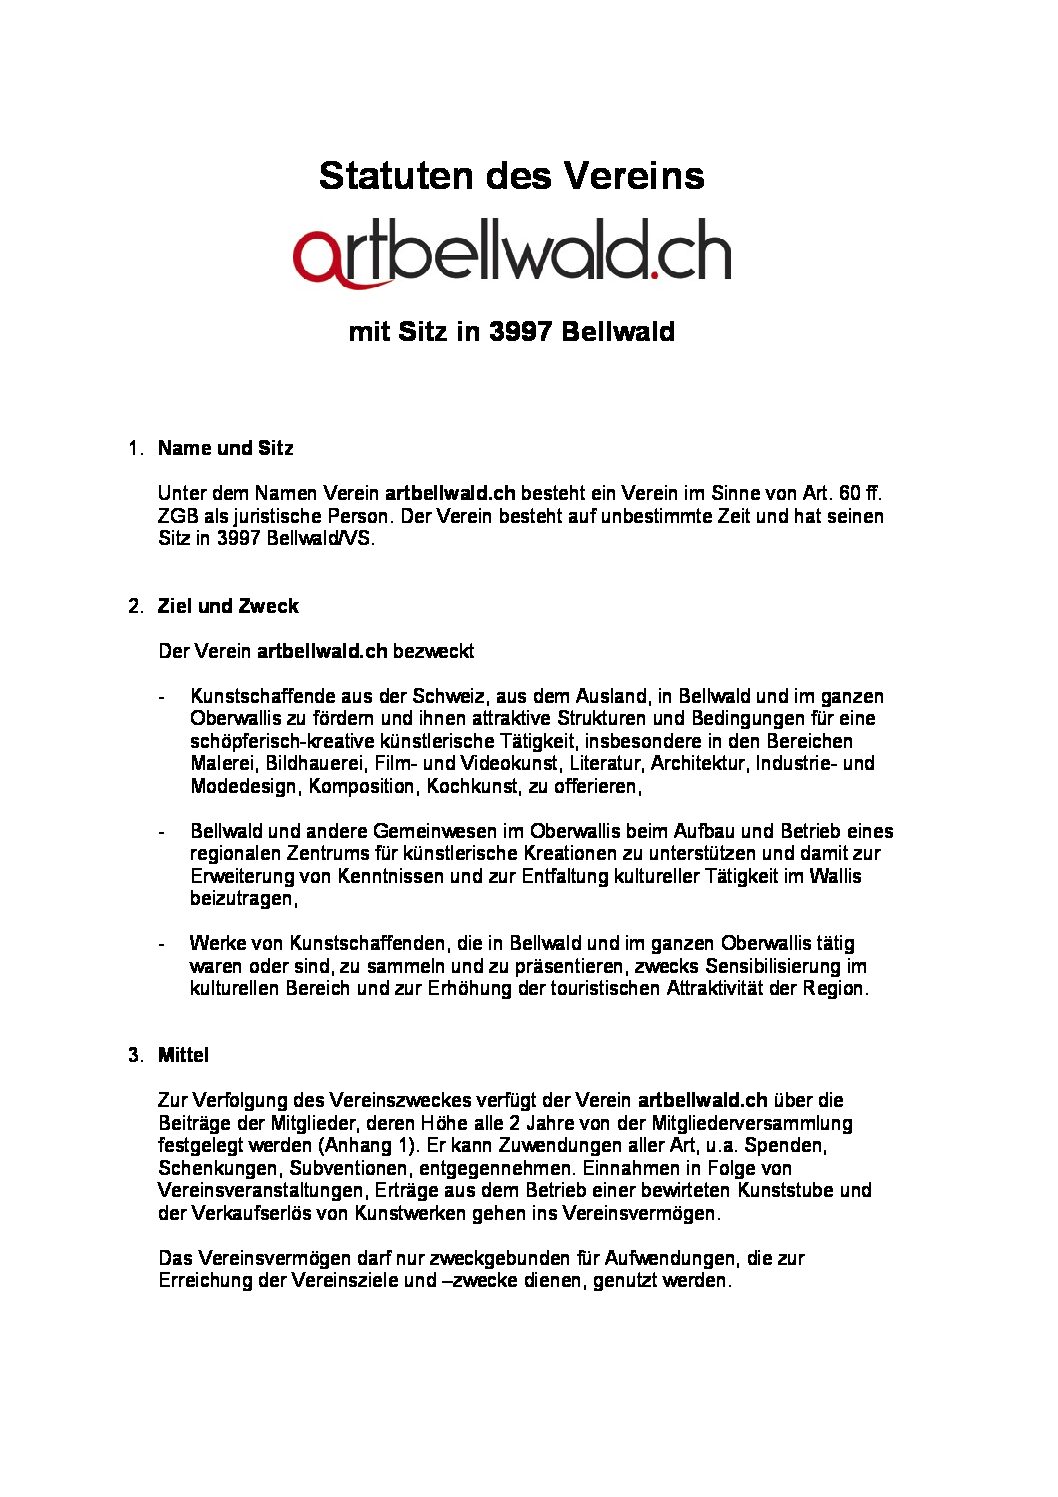 20210329_Statuten artbellwald.ch_neueste Version_nicht unterschrieben